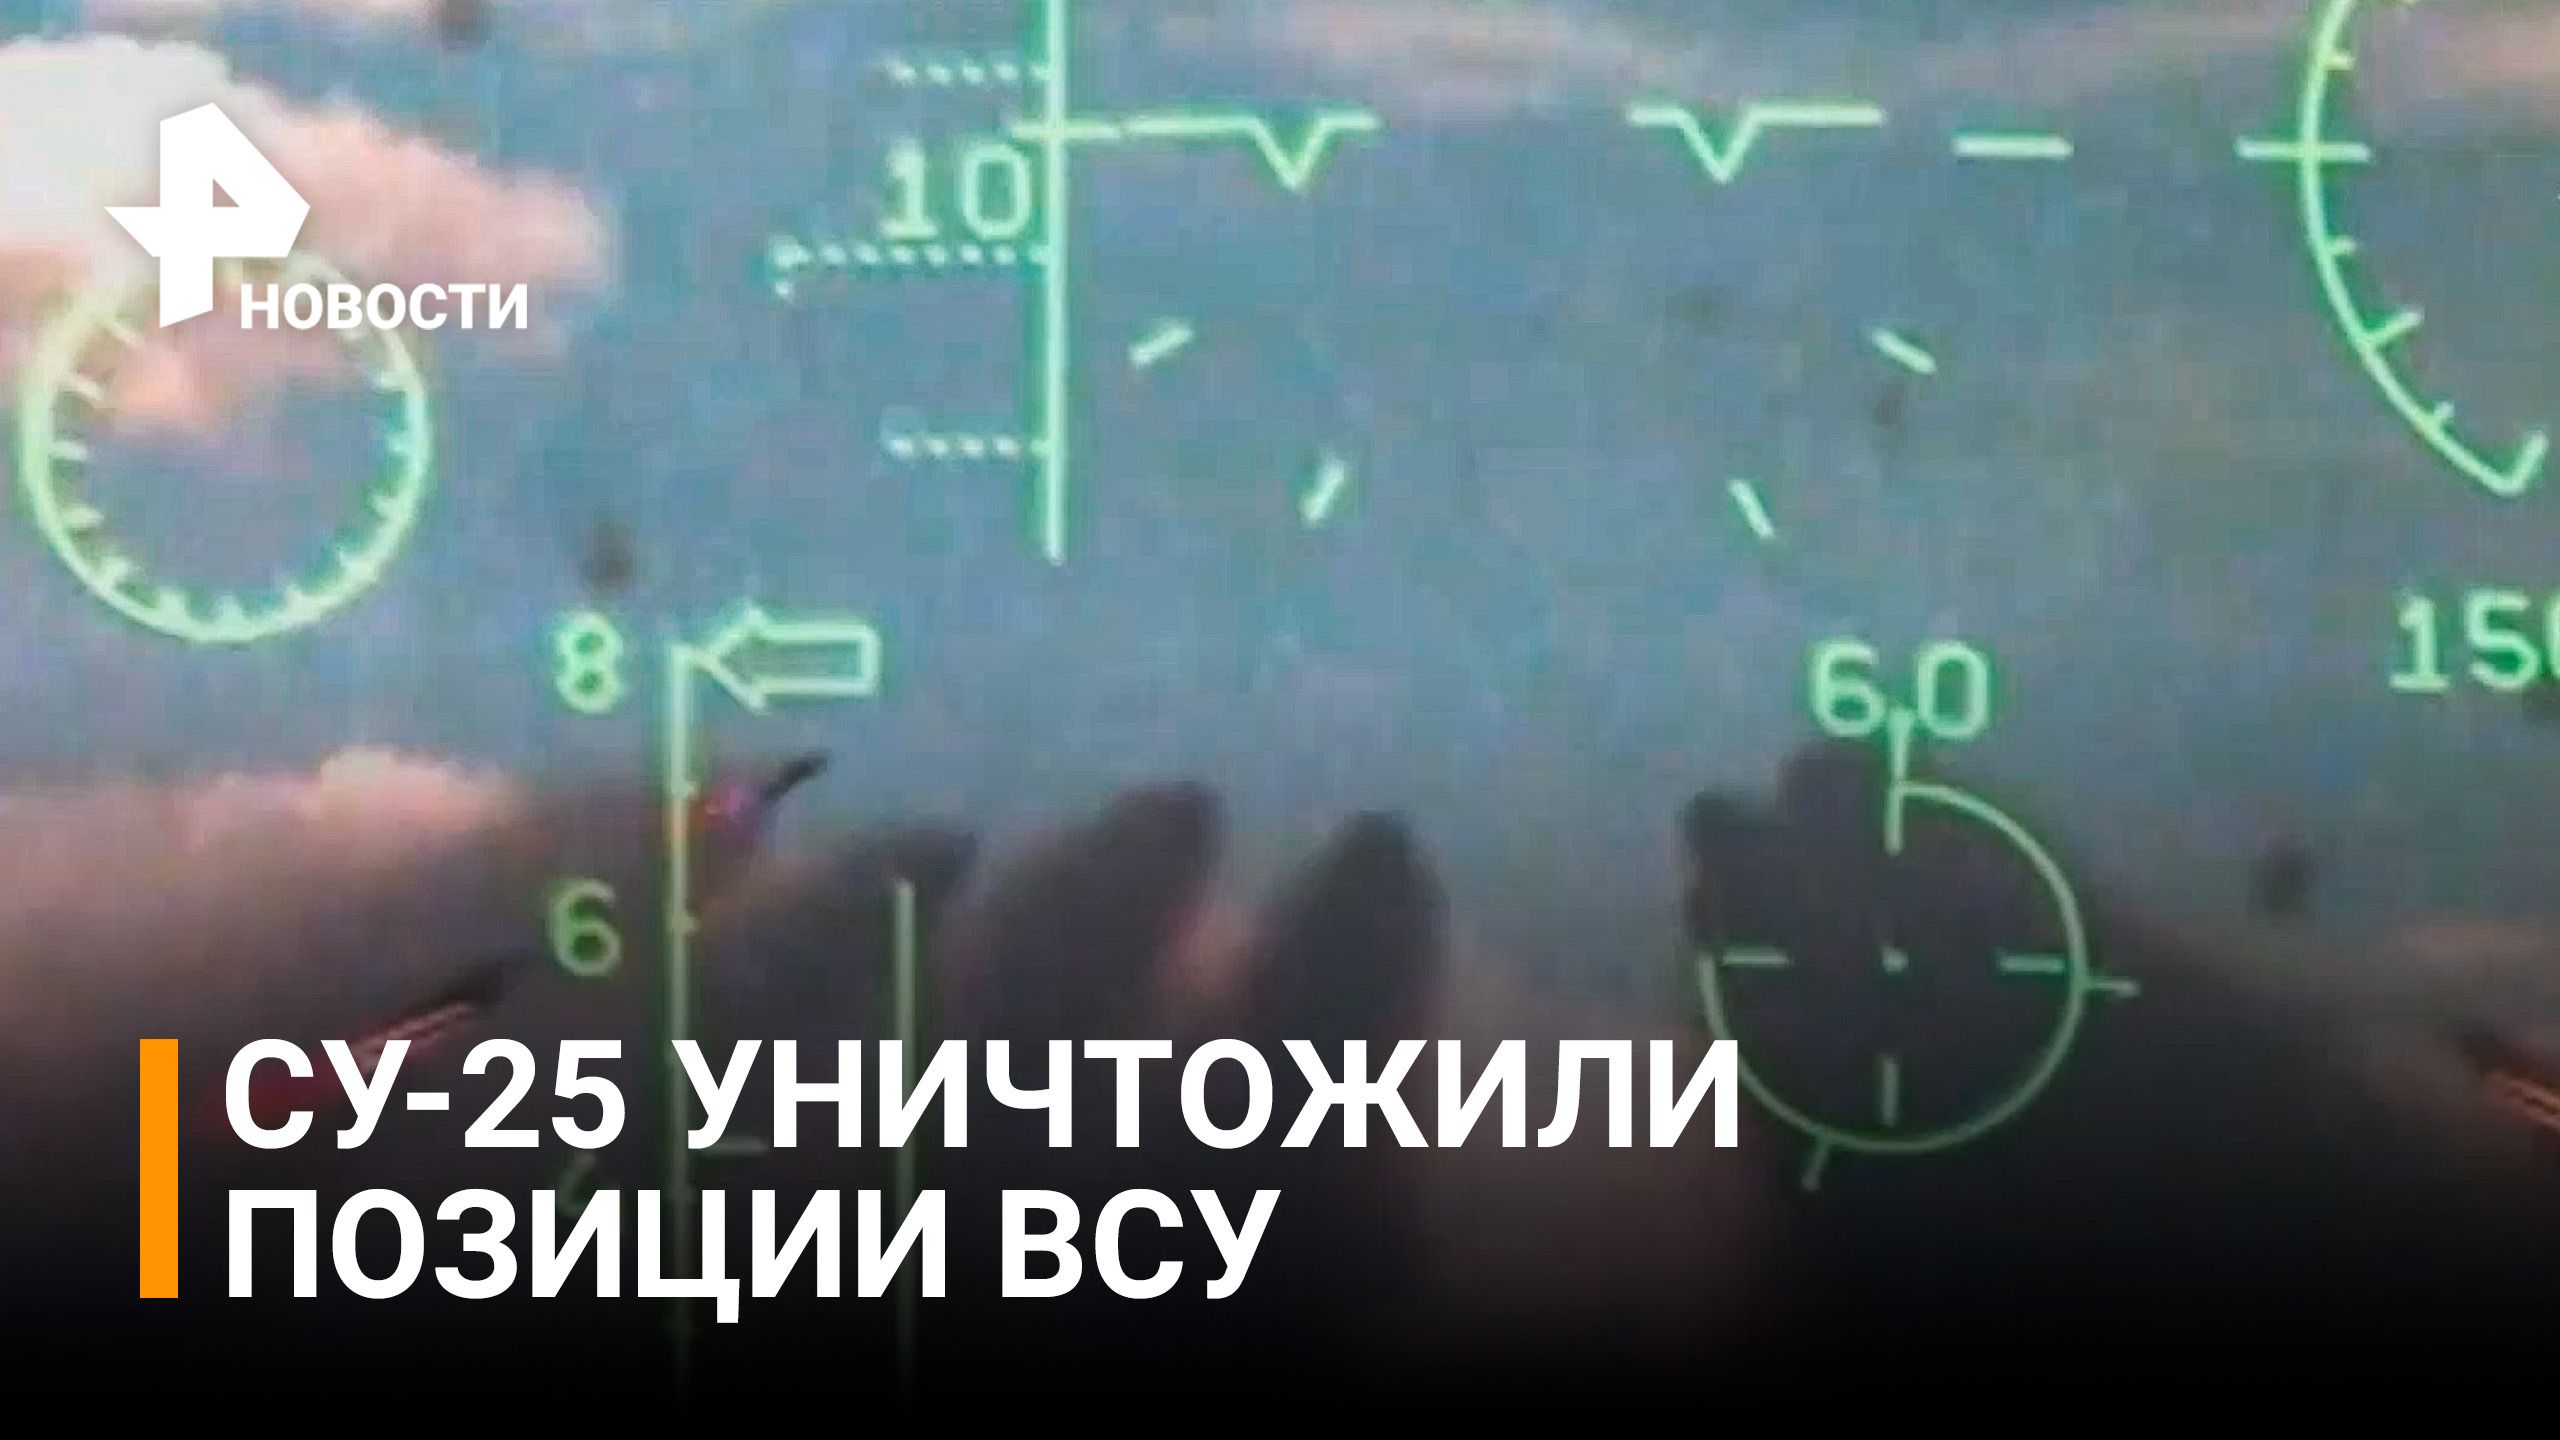 Как "летающие танки" Су-25 наносят удары по объектам ВСУ / РЕН Новости